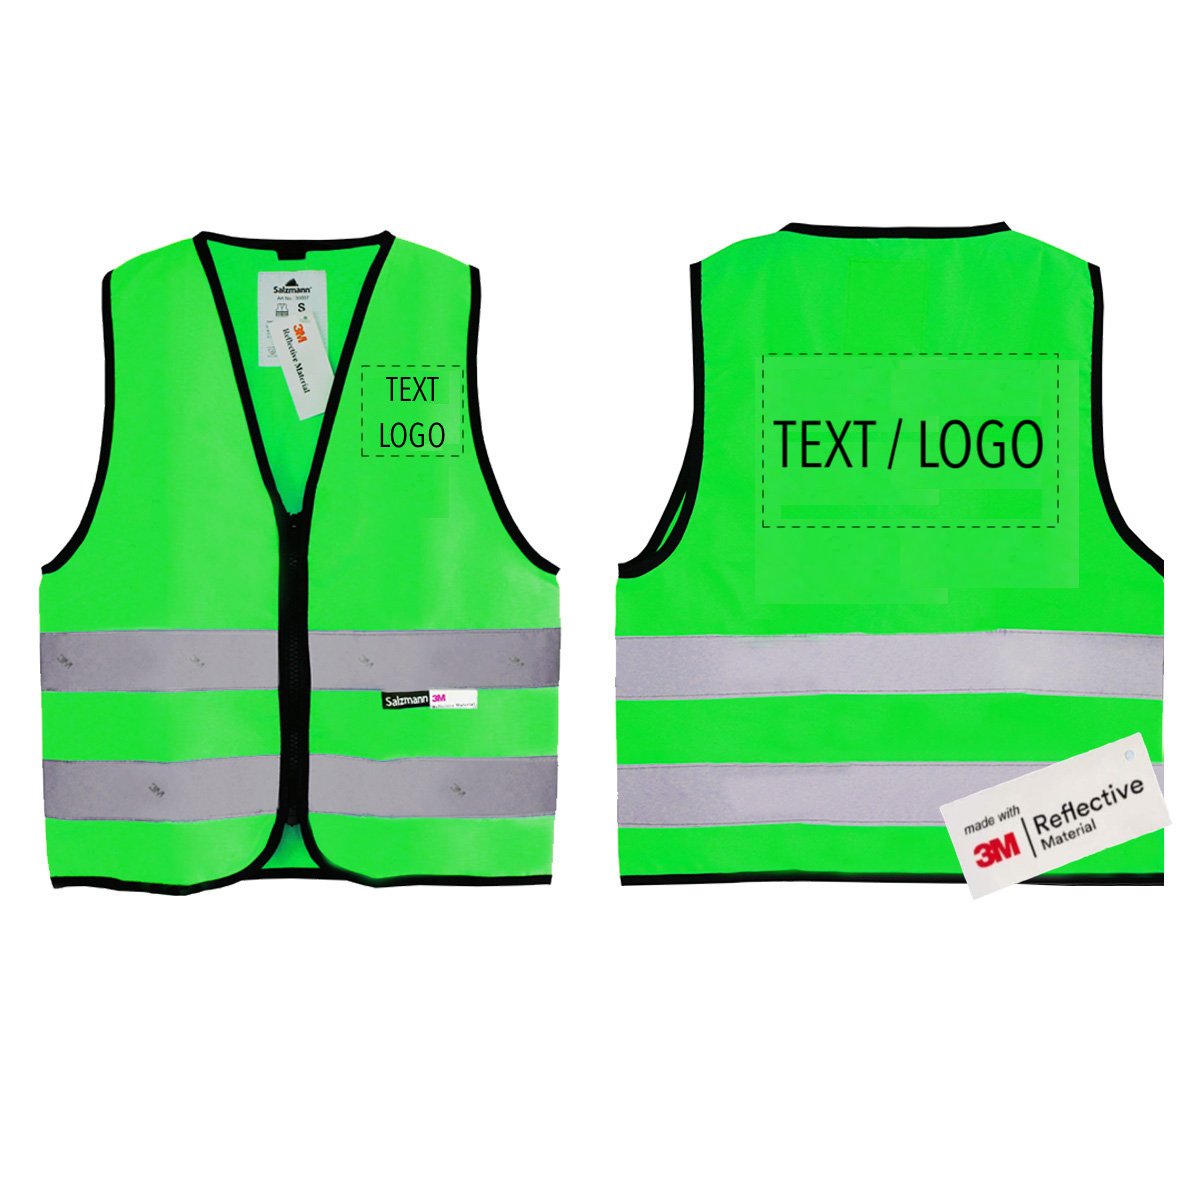 VALTRA: Child's reflective safety vest